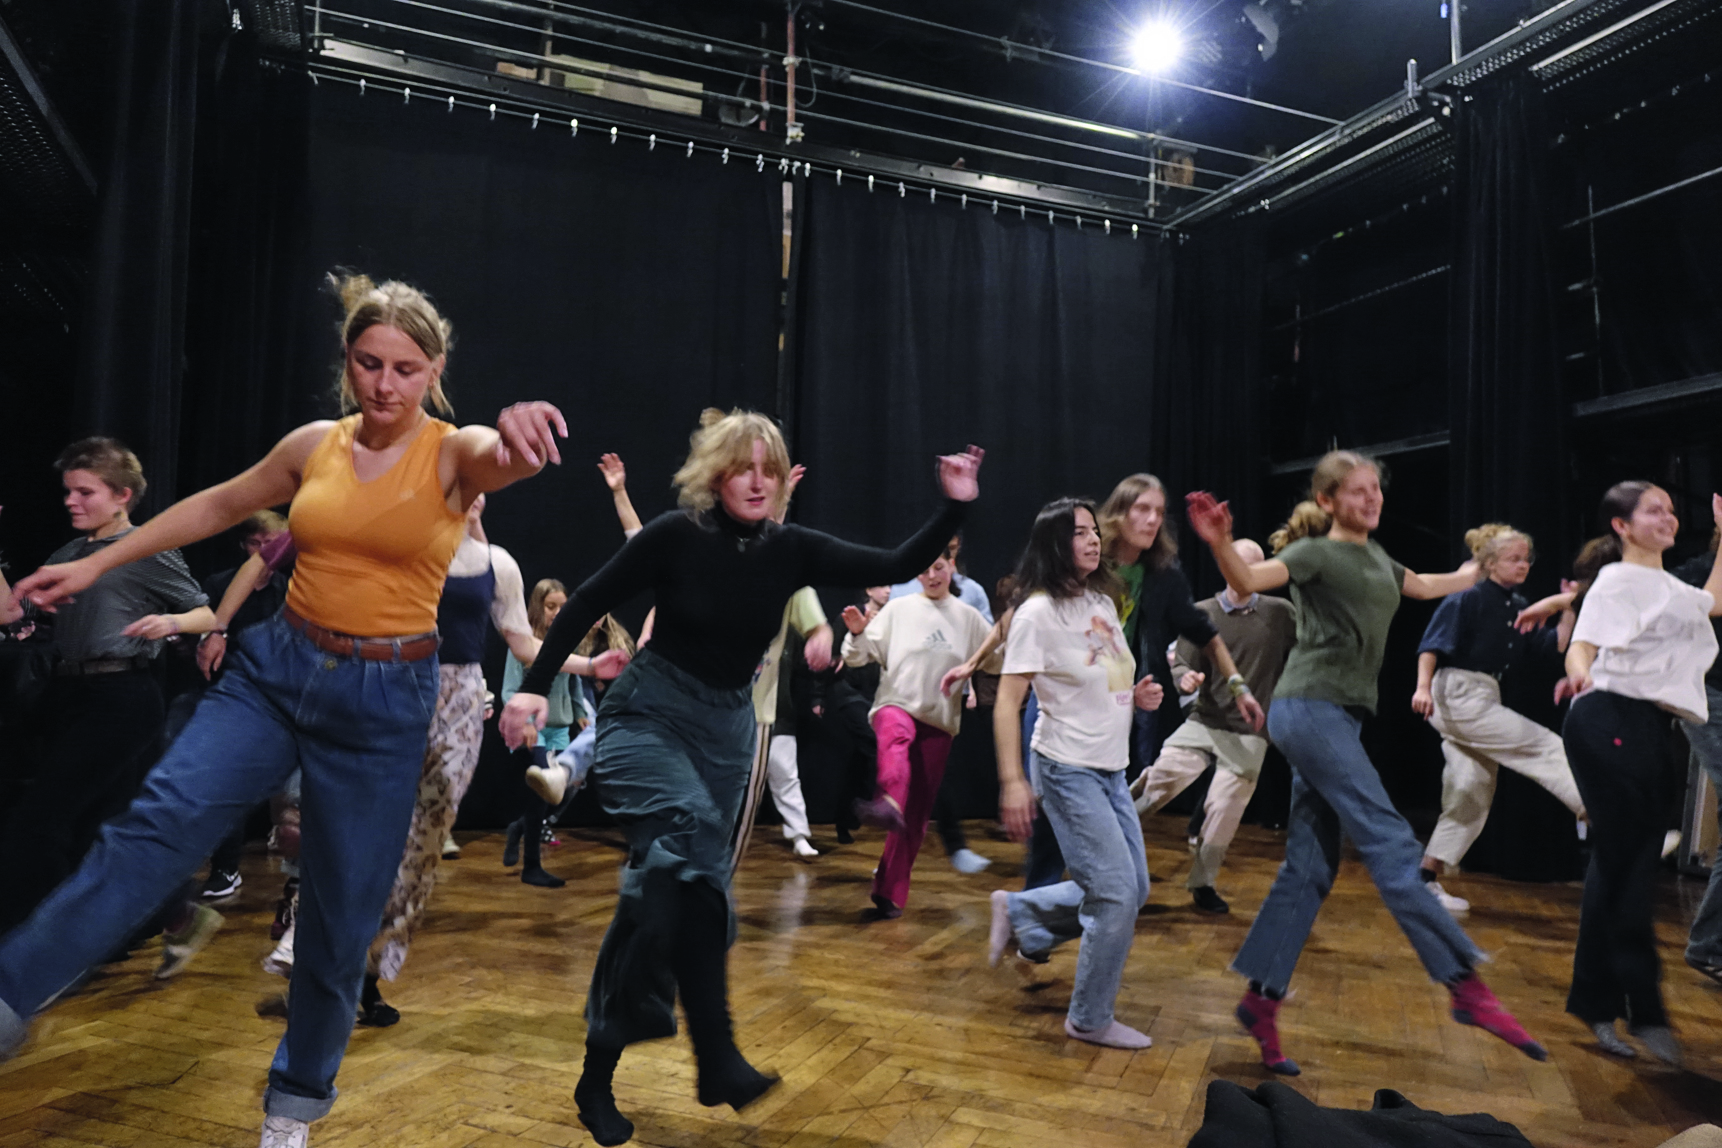   Damals wie heute | Der Theaterverein K bringt die Leipziger Swing-Jugend der dreißiger Jahre auf die Bühne  